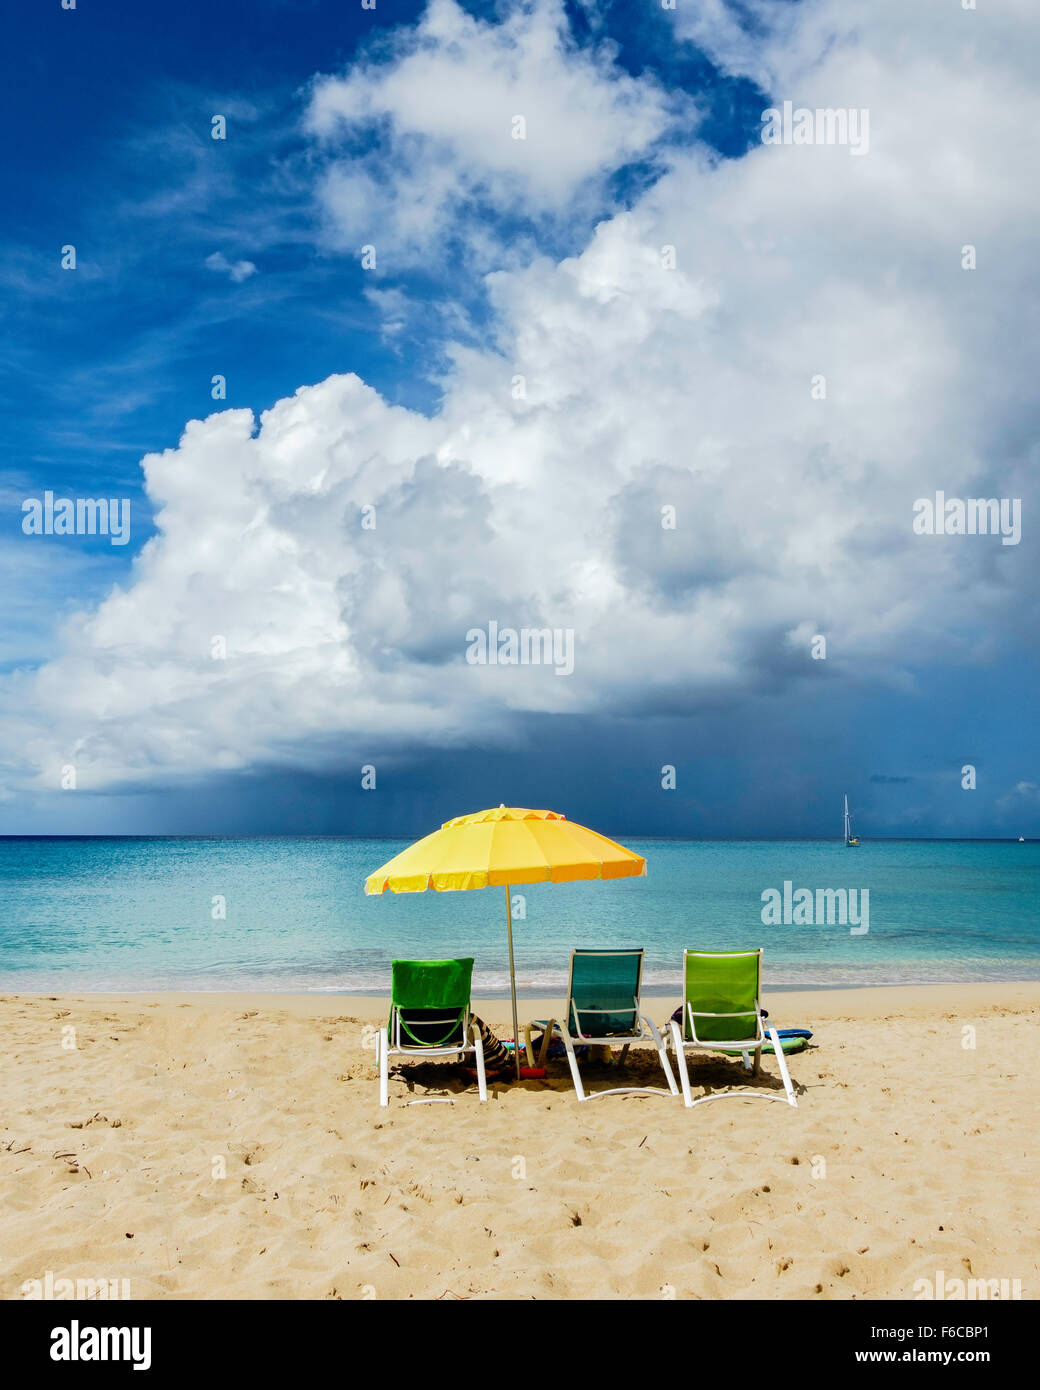 Trois chaises de plage sous un parapluie jaune donnent sur une tempête tropicale sur la mer des Caraïbes. Sainte Croix, Îles Vierges des États-Unis. USVI, U.S.V.I. Banque D'Images